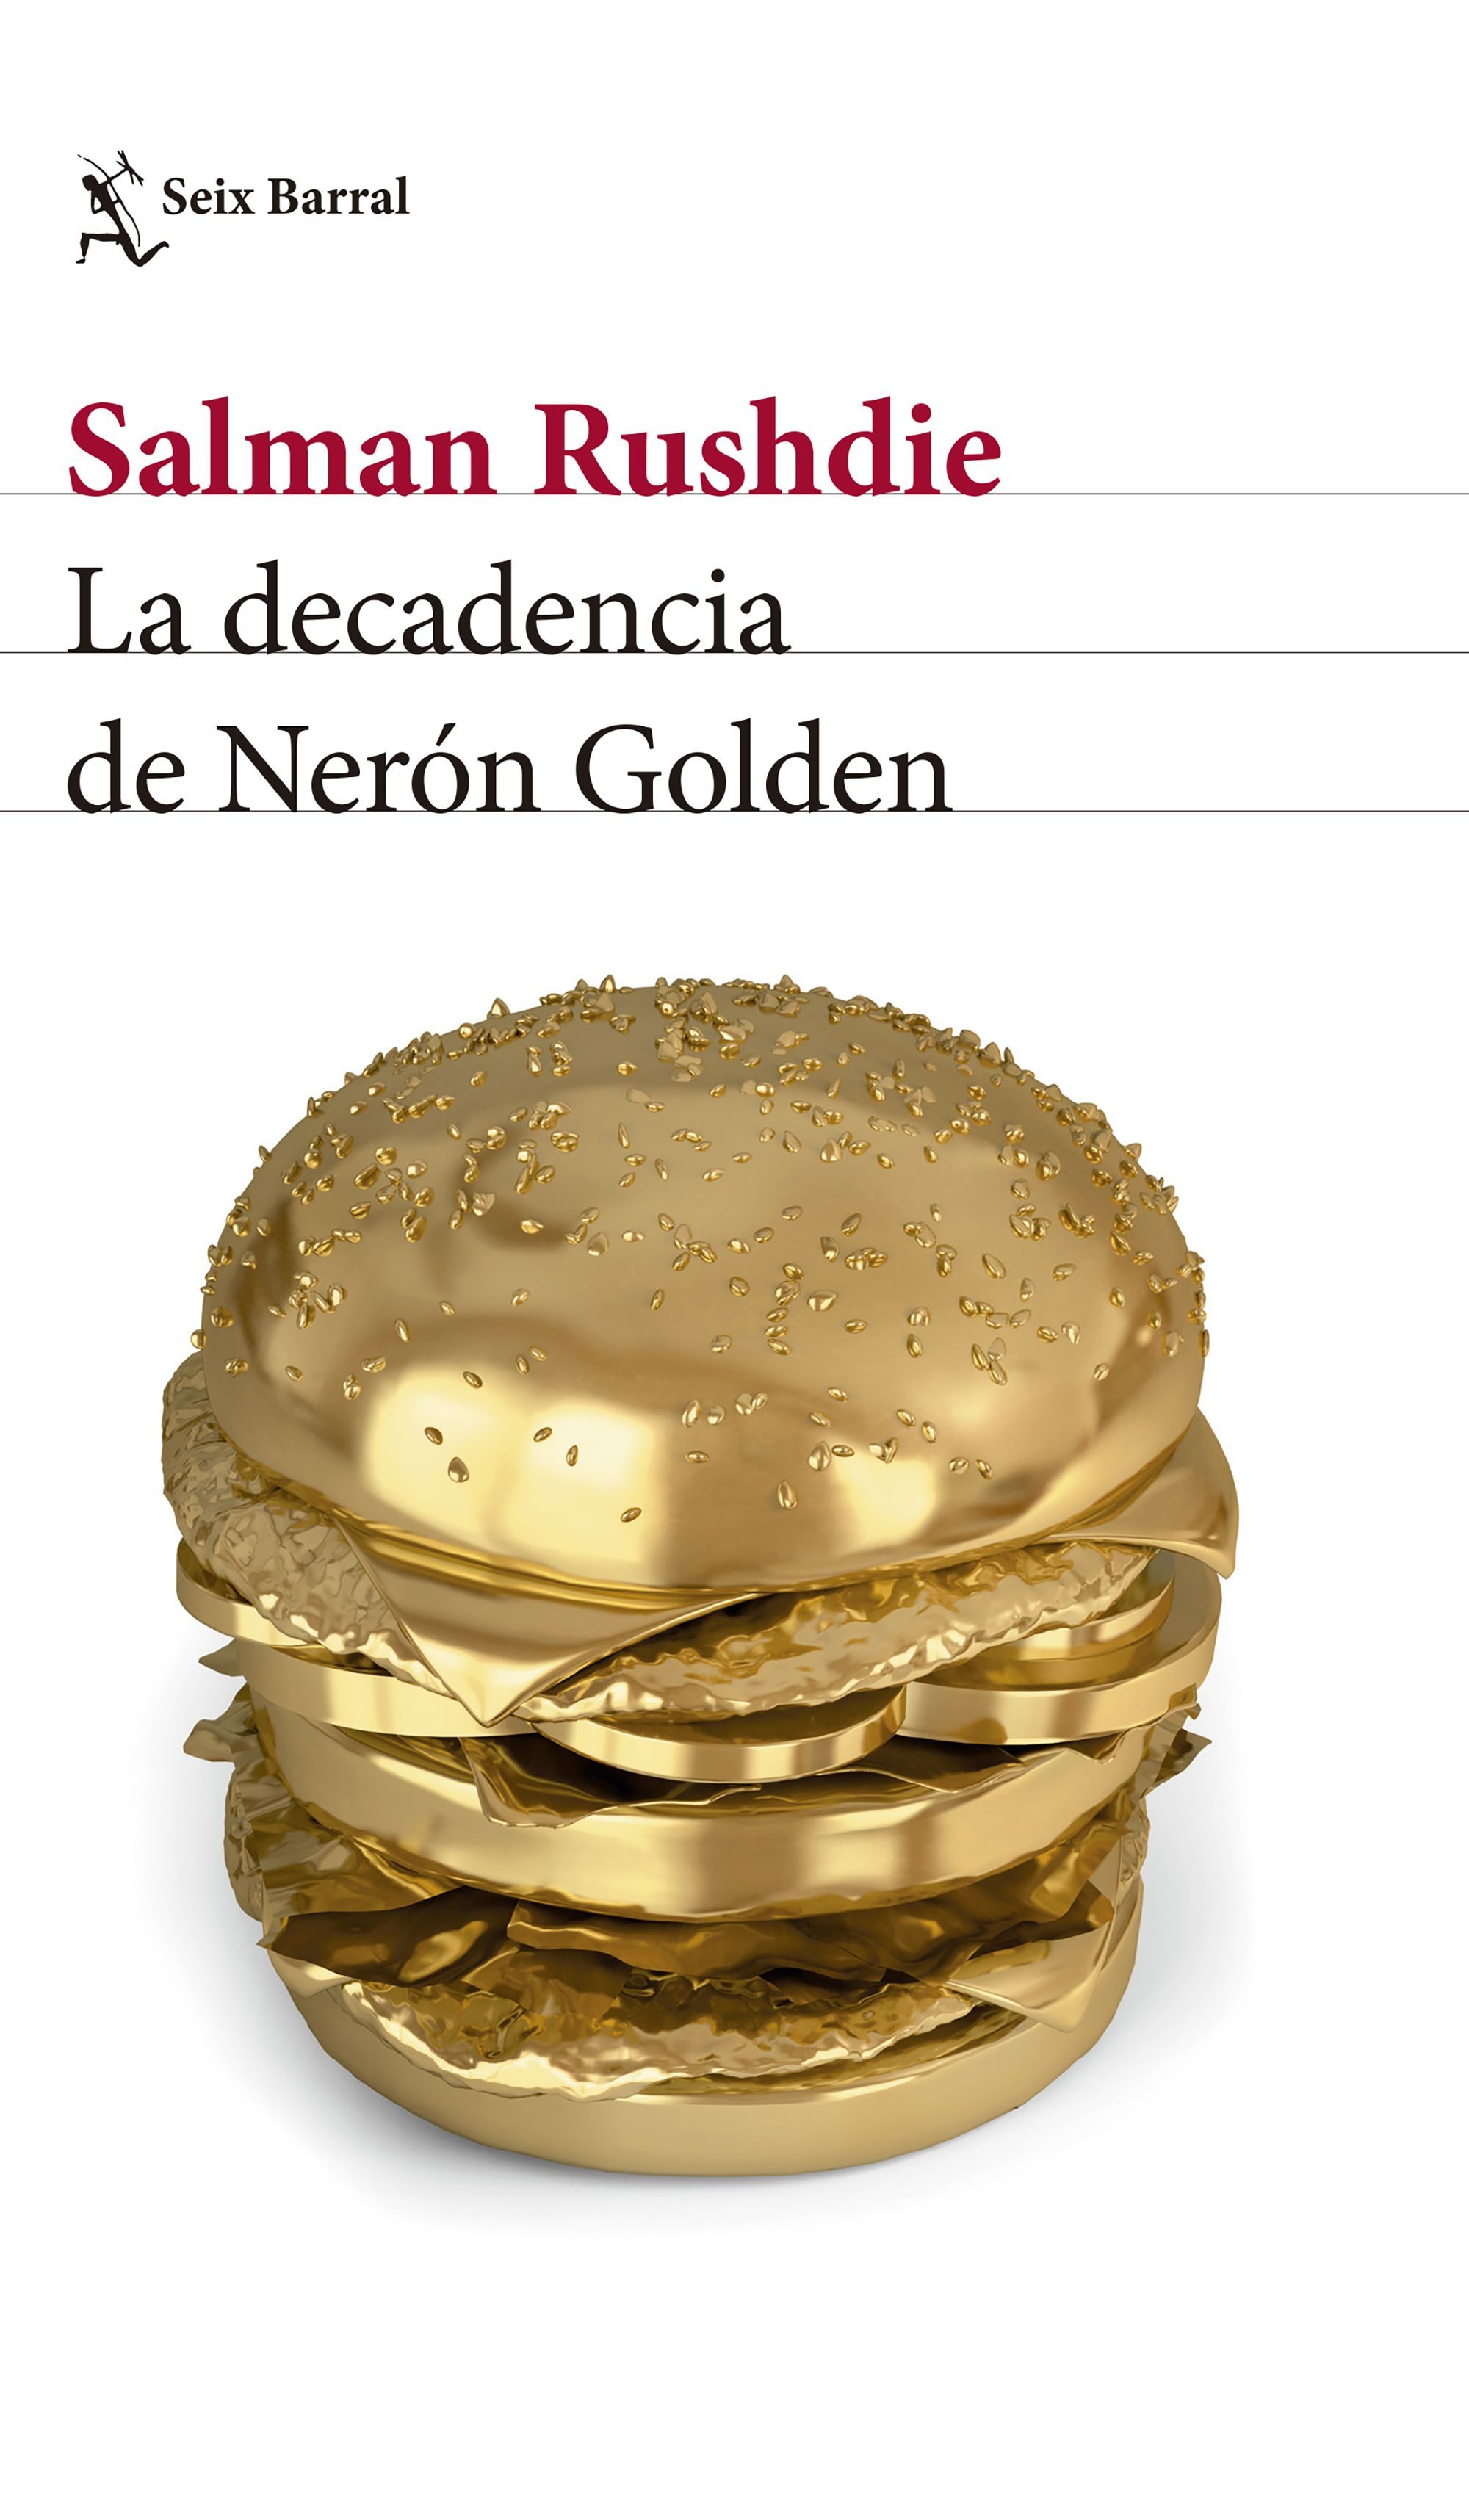 'La decadencia de Nerón Golden'.